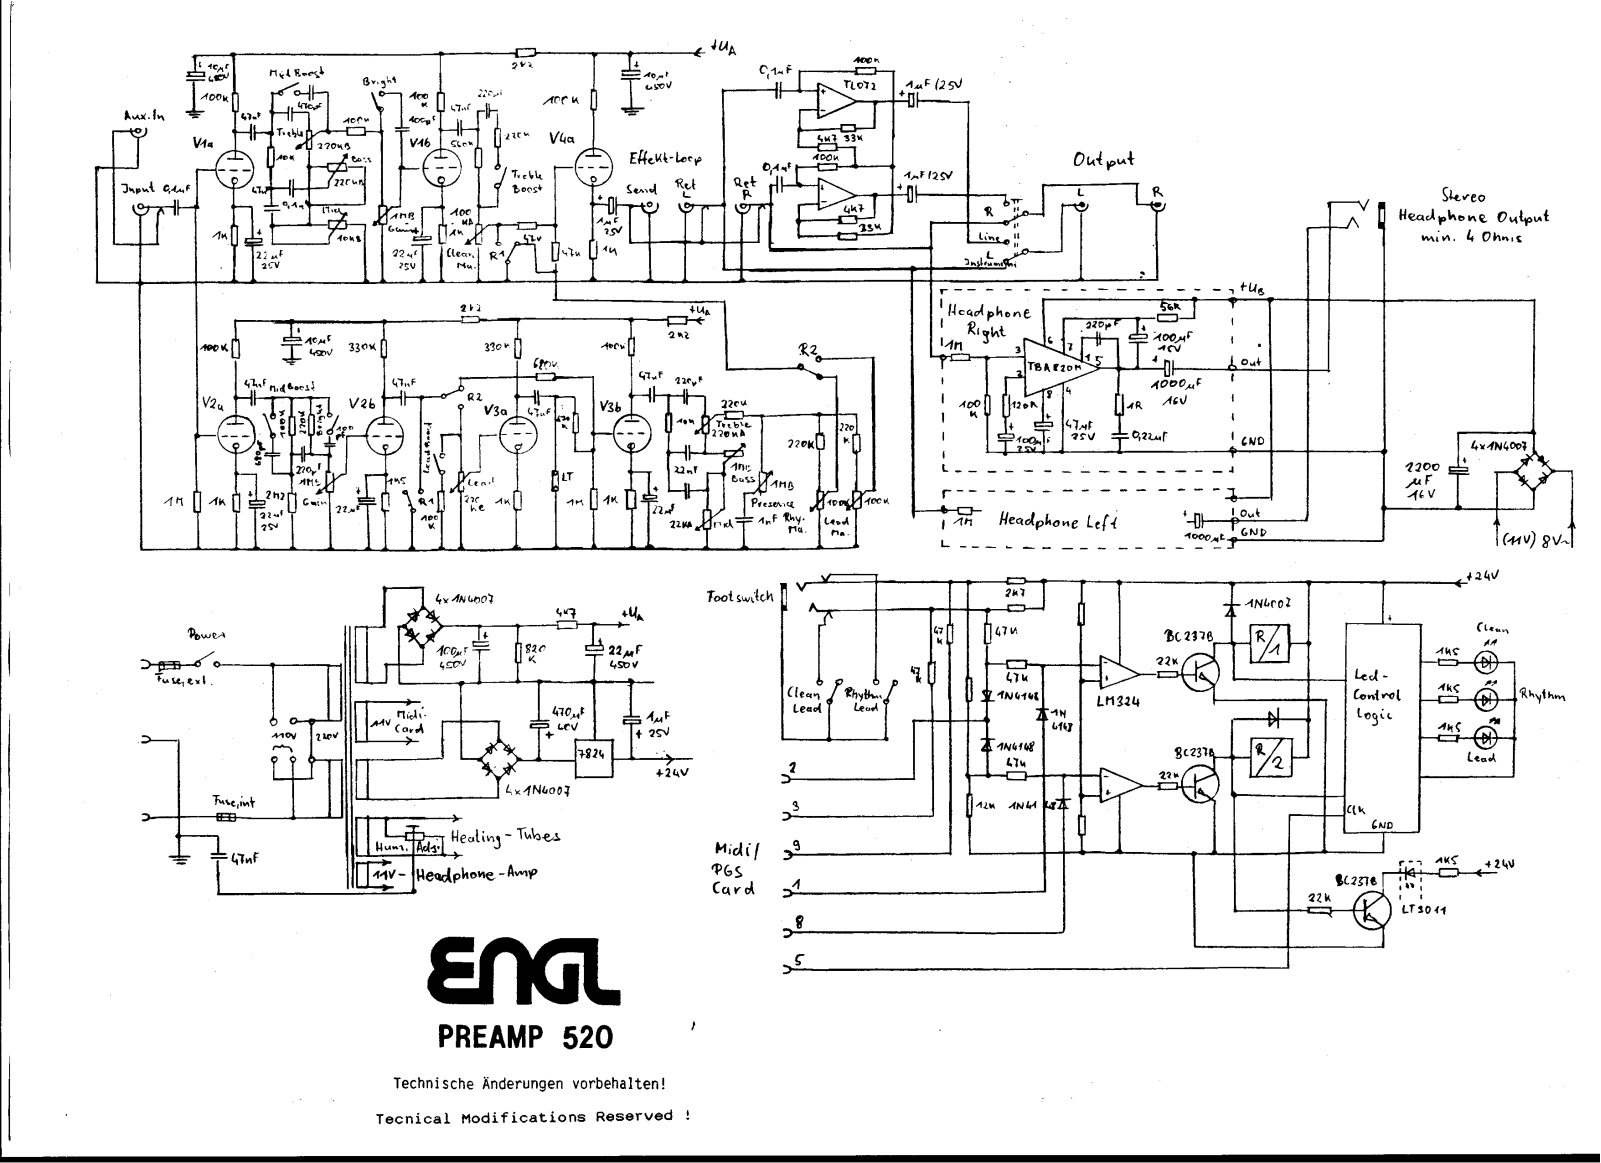 Engl e520 schematic